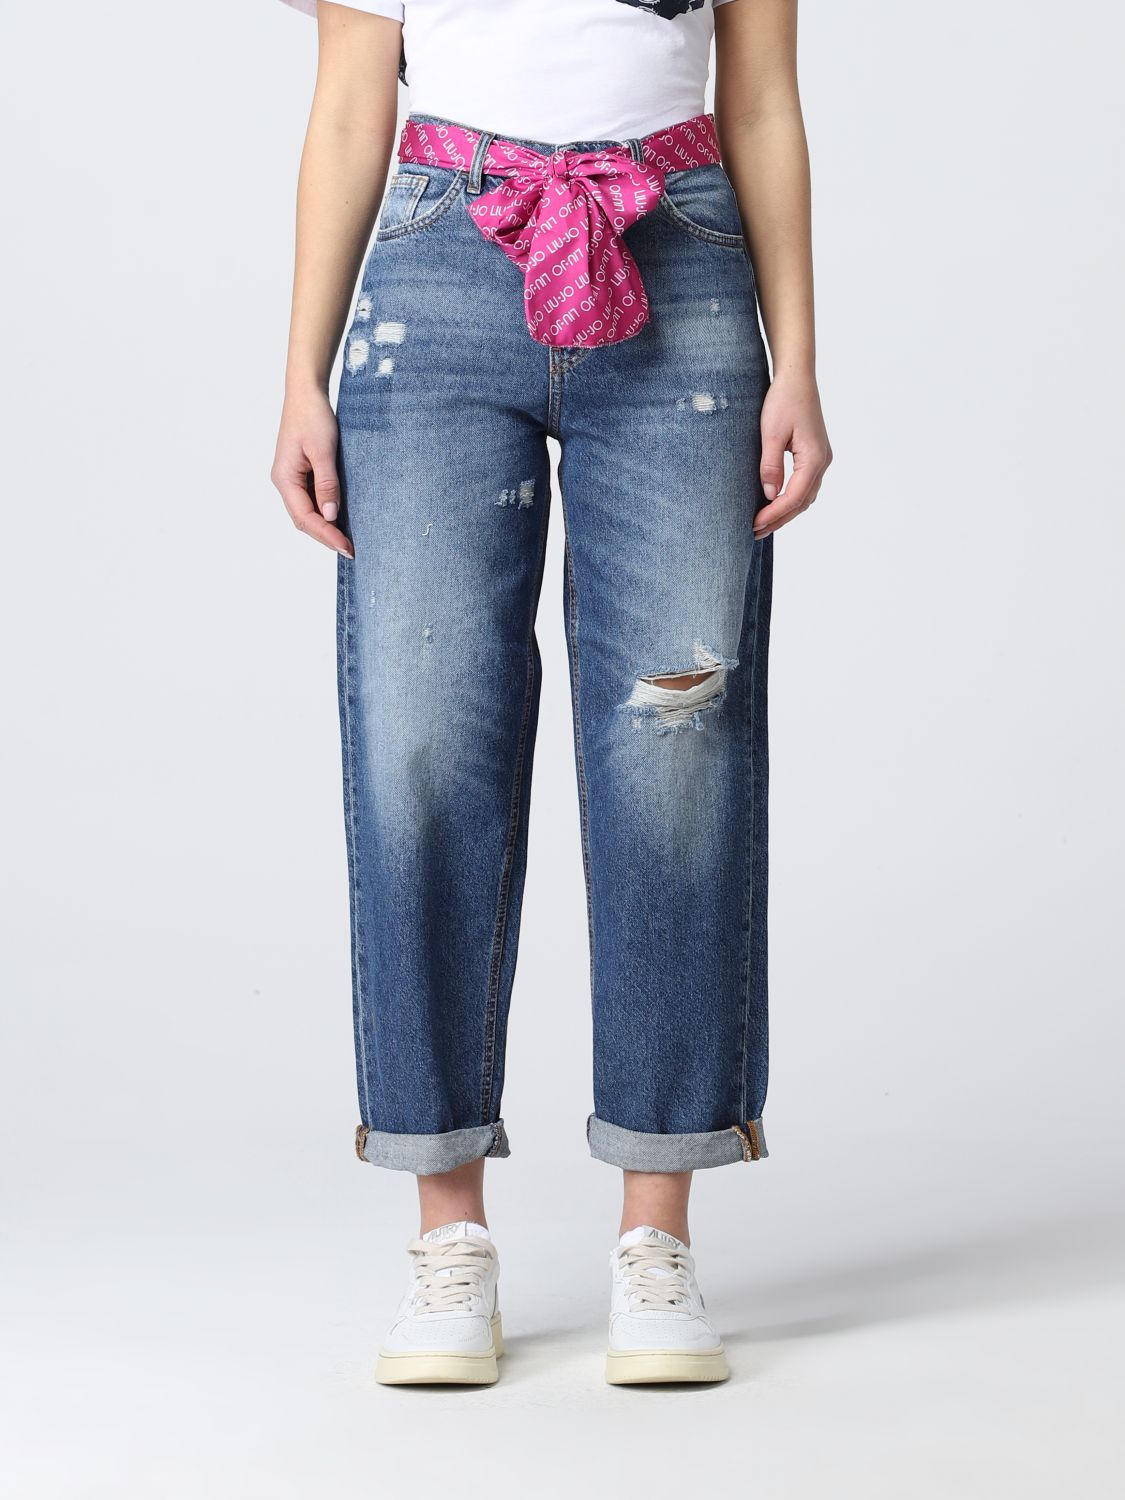 klinker Snazzy Hertogin Liu Jo Outlet: cropped jeans in washed denim with tears - Denim | Liu Jo  jeans UA2099D4666 online on GIGLIO.COM